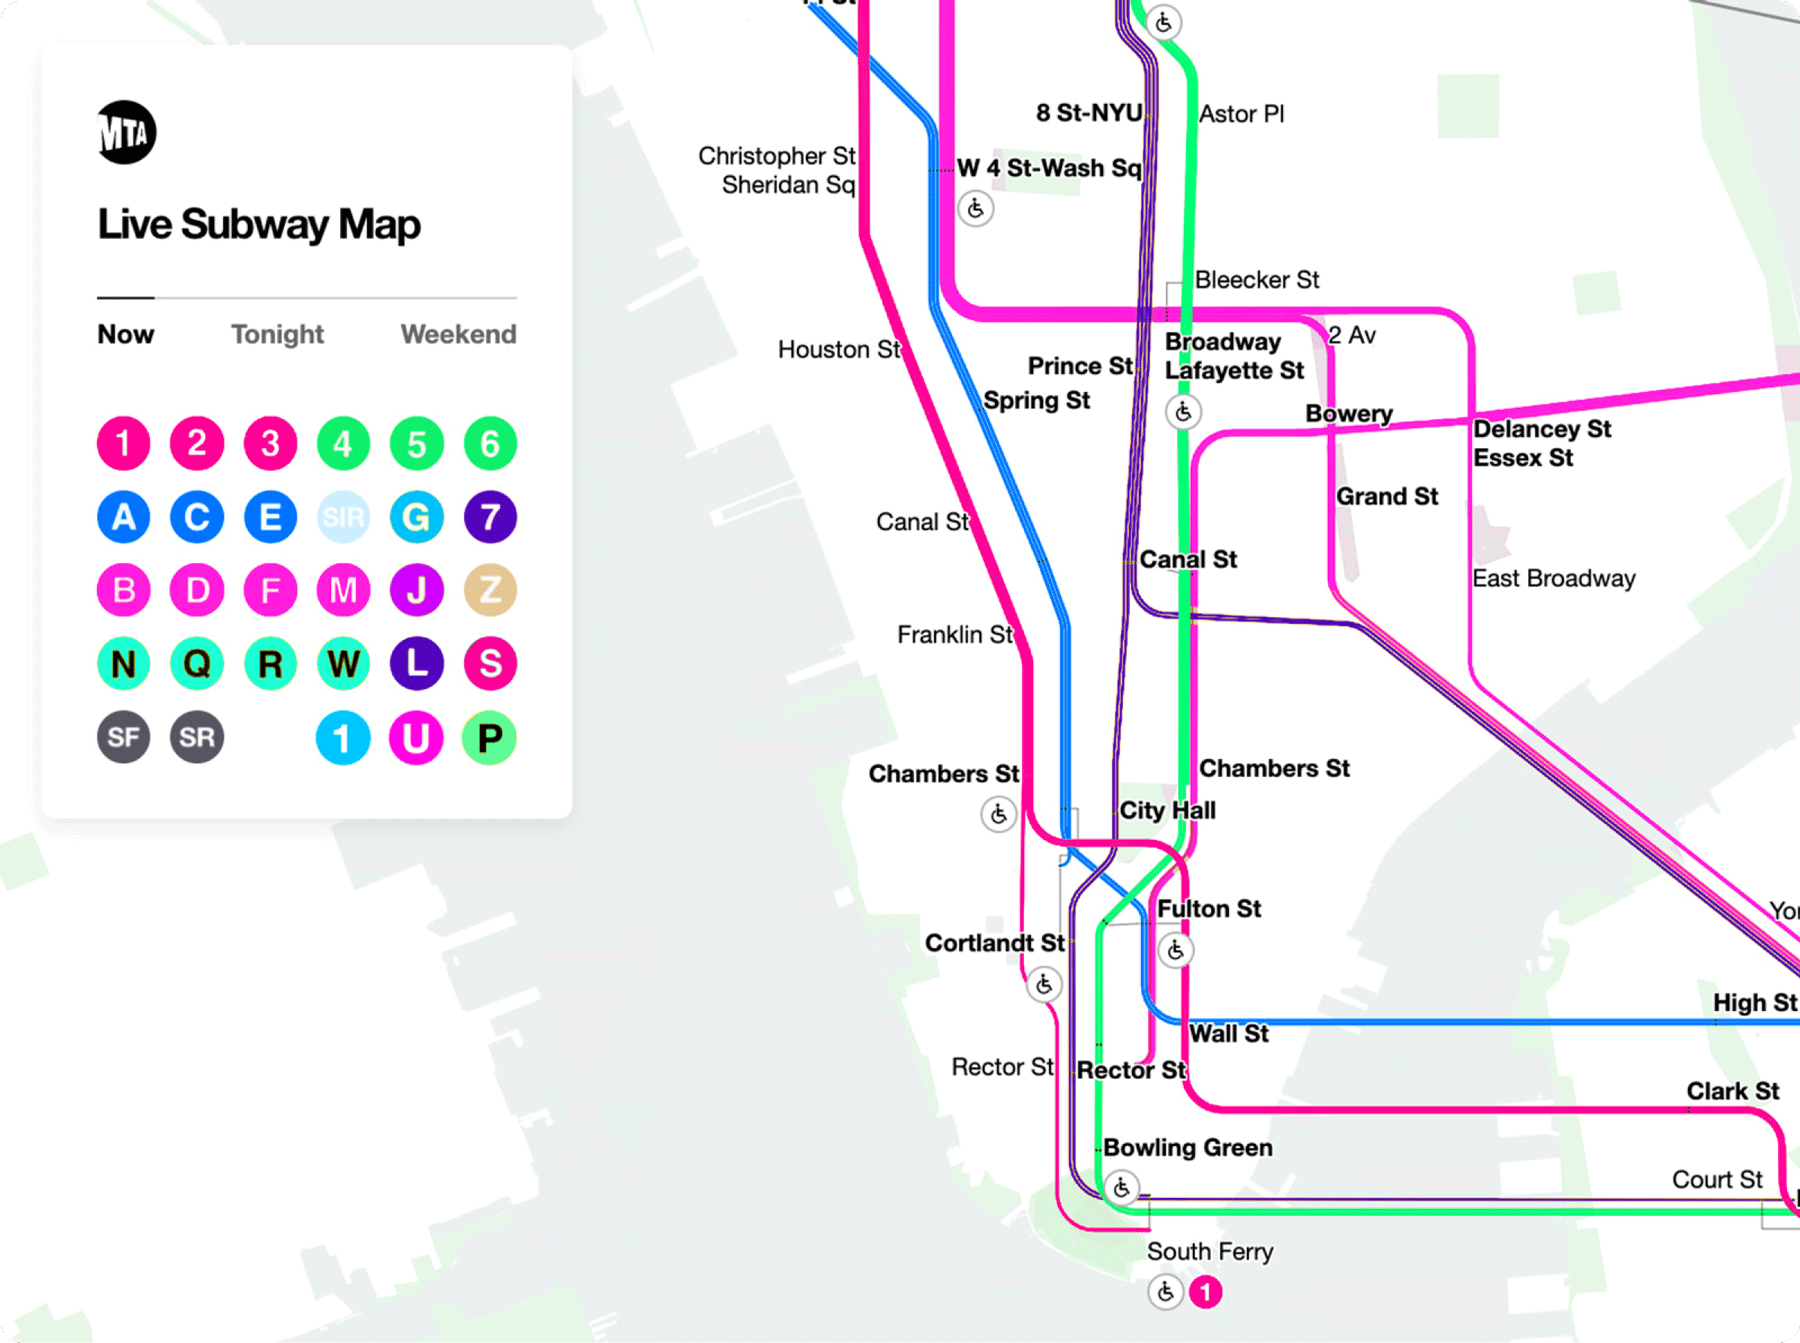 1up NYC Subway Map